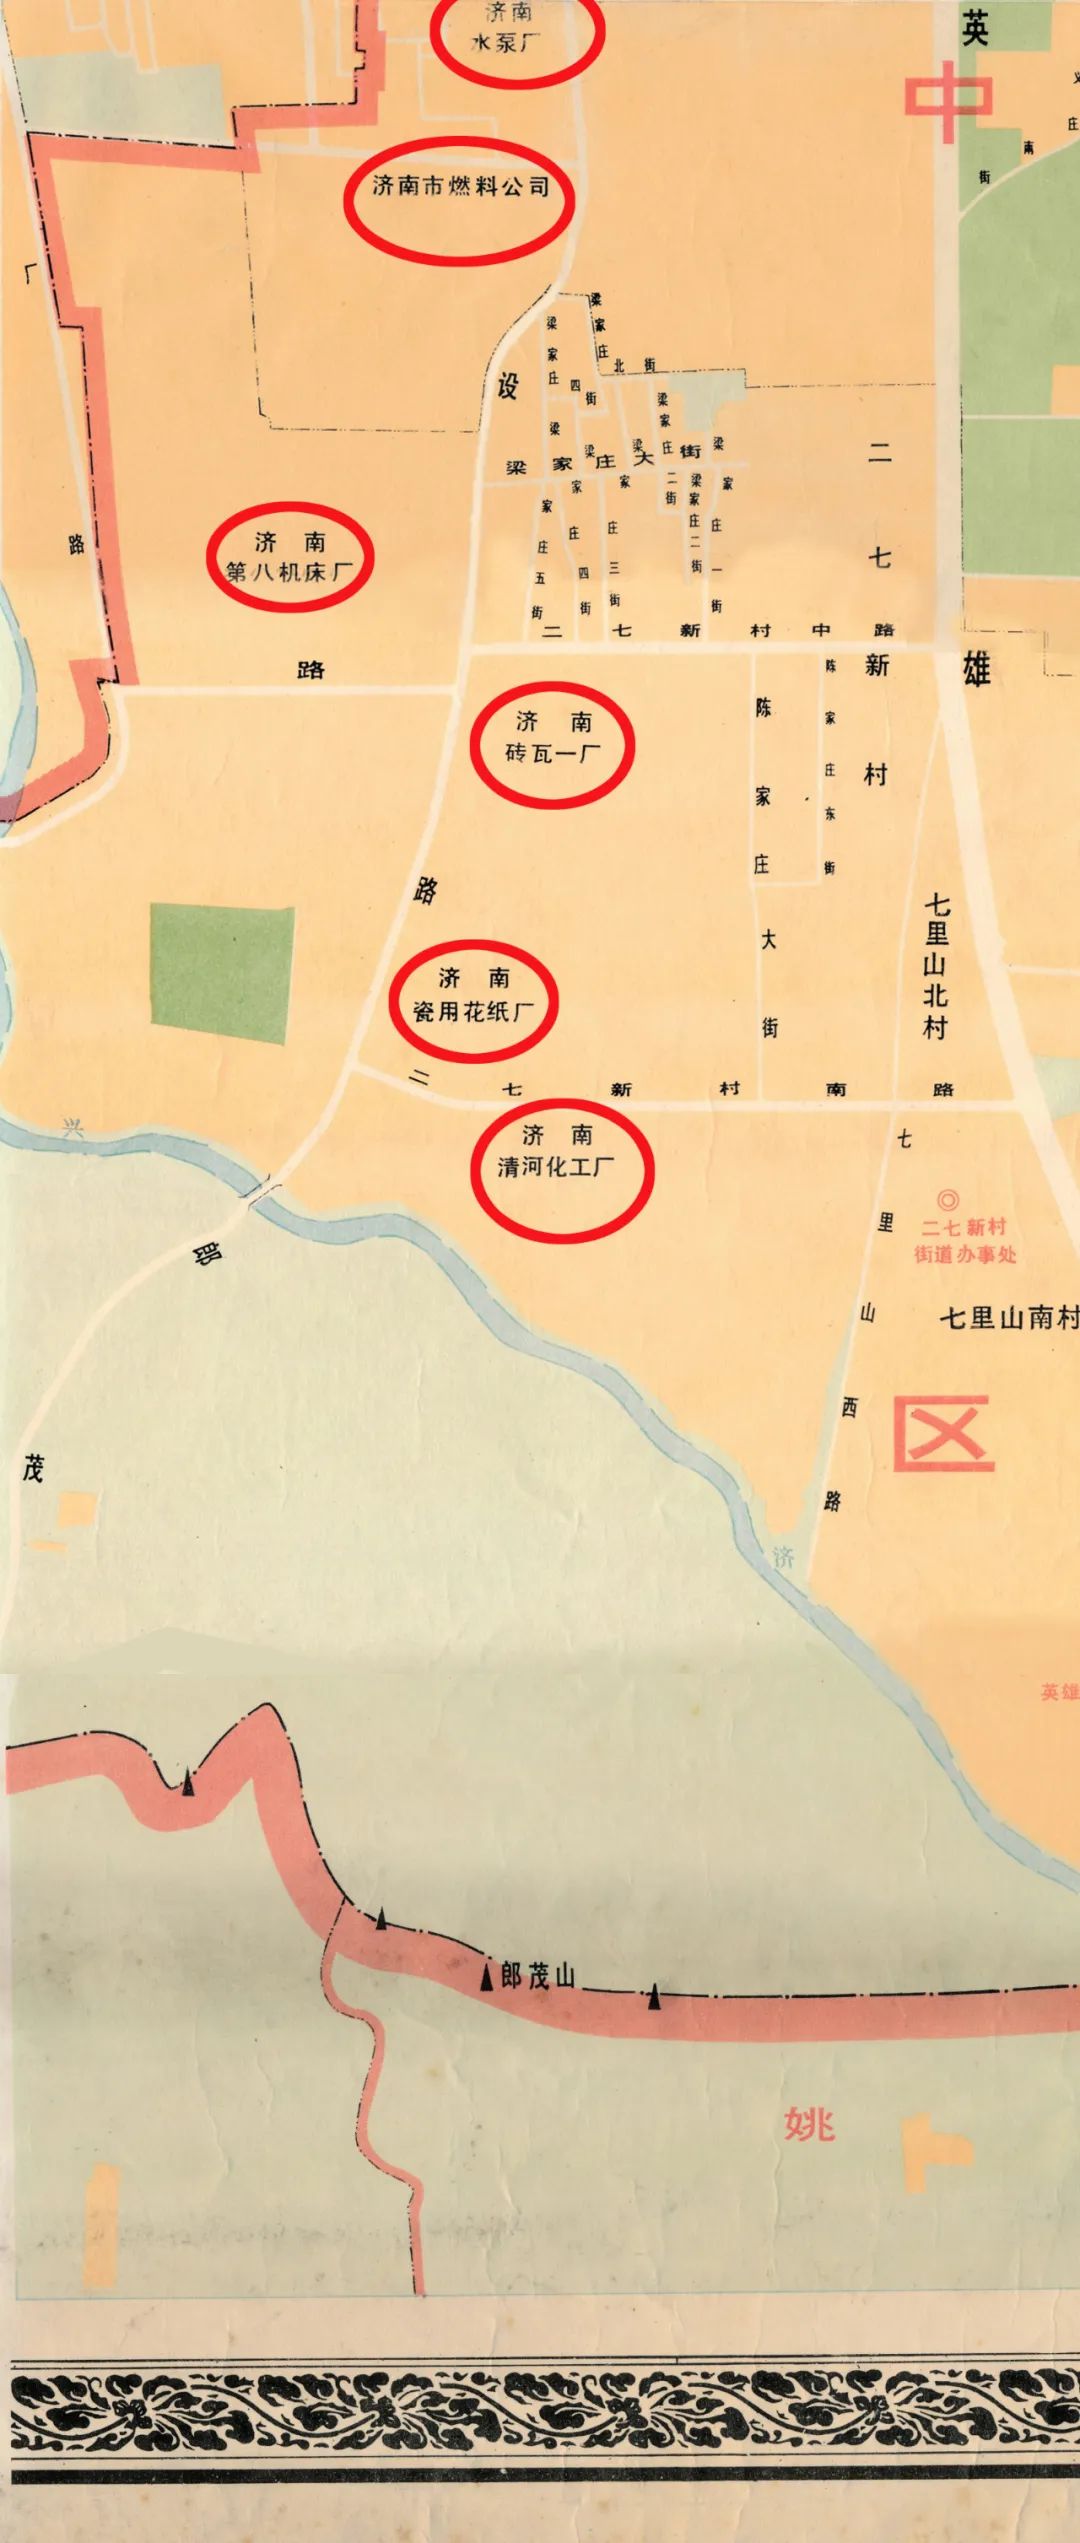 济南地图老城区图片